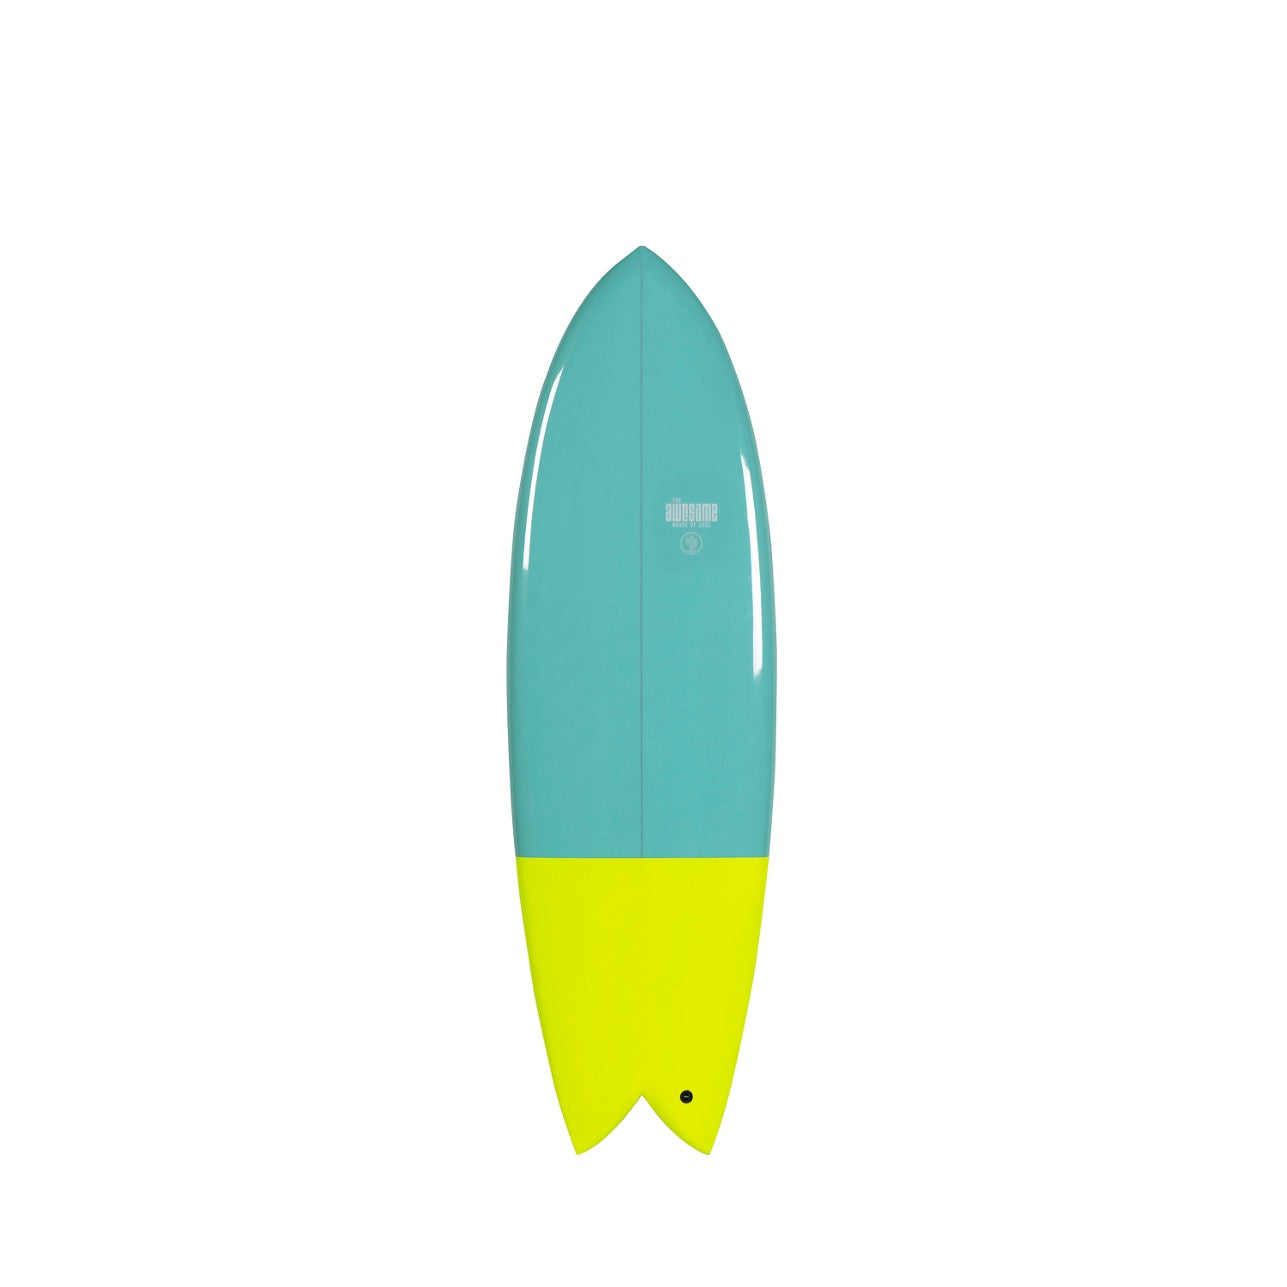 Surfboard "Webros"